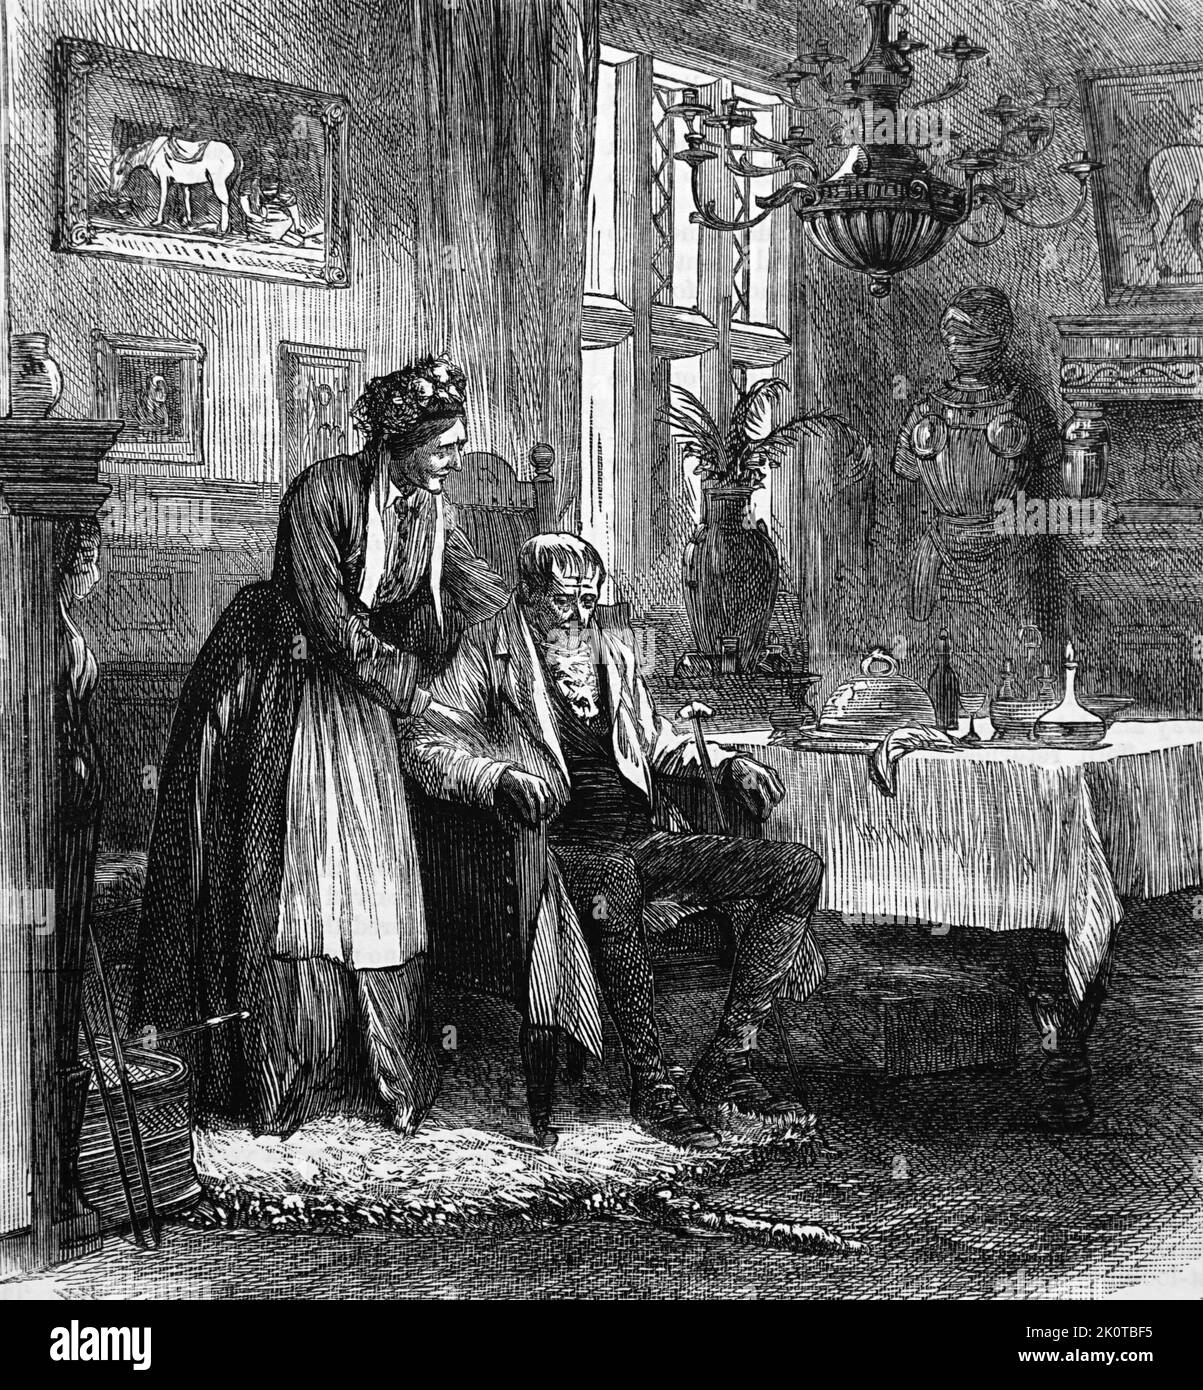 Abbildung mit dem Titel „The Old Squire“, die den Squire nach dem Abendessen allein darstellt. Datiert aus dem 19.. Jahrhundert Stockfoto